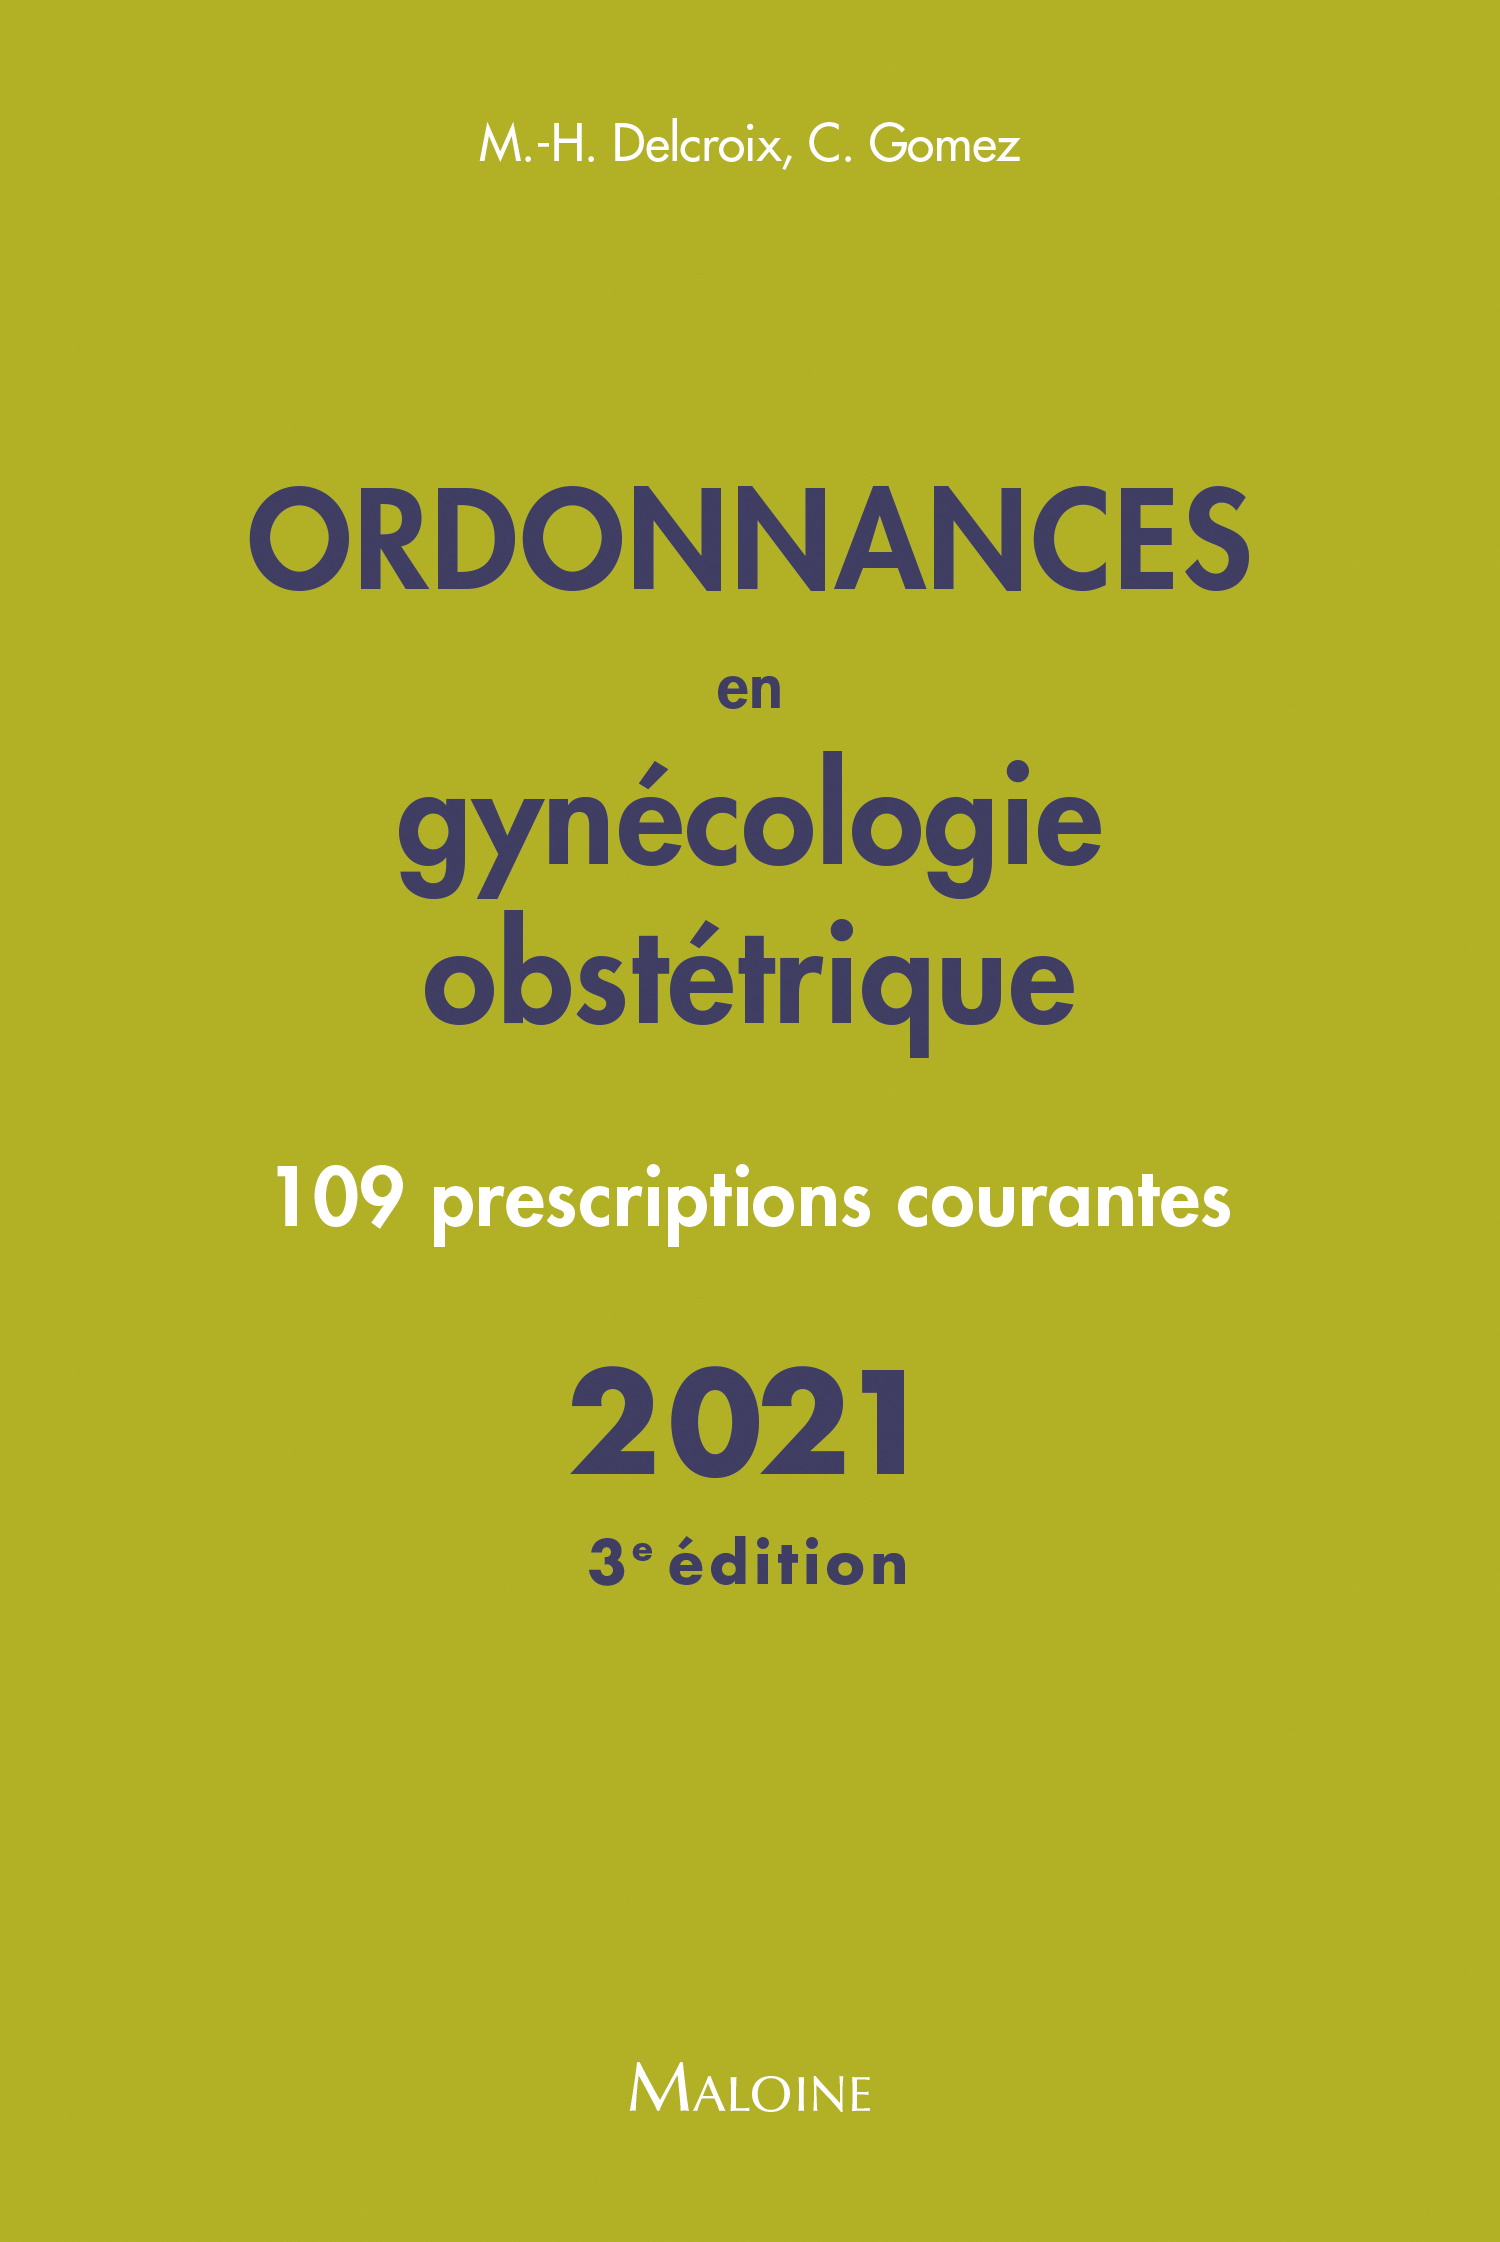 Ordonnances en gynécologie obstétrique 2021, 3e éd.